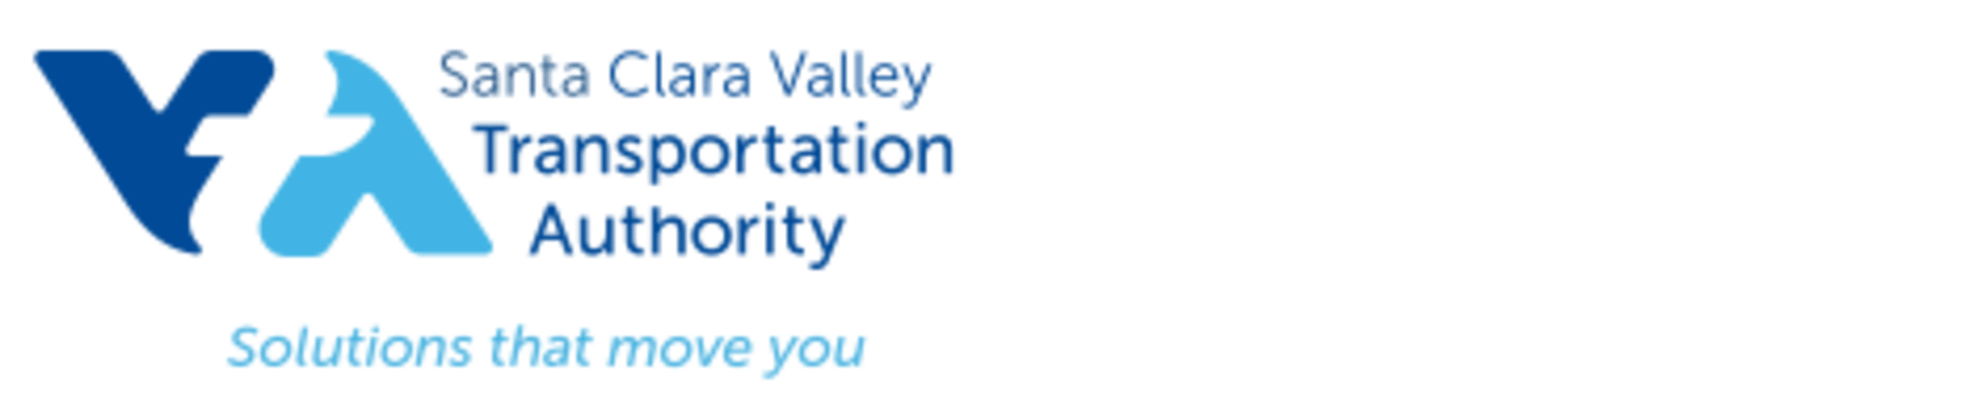 Santa Clara Valley Transportation Authority Logo